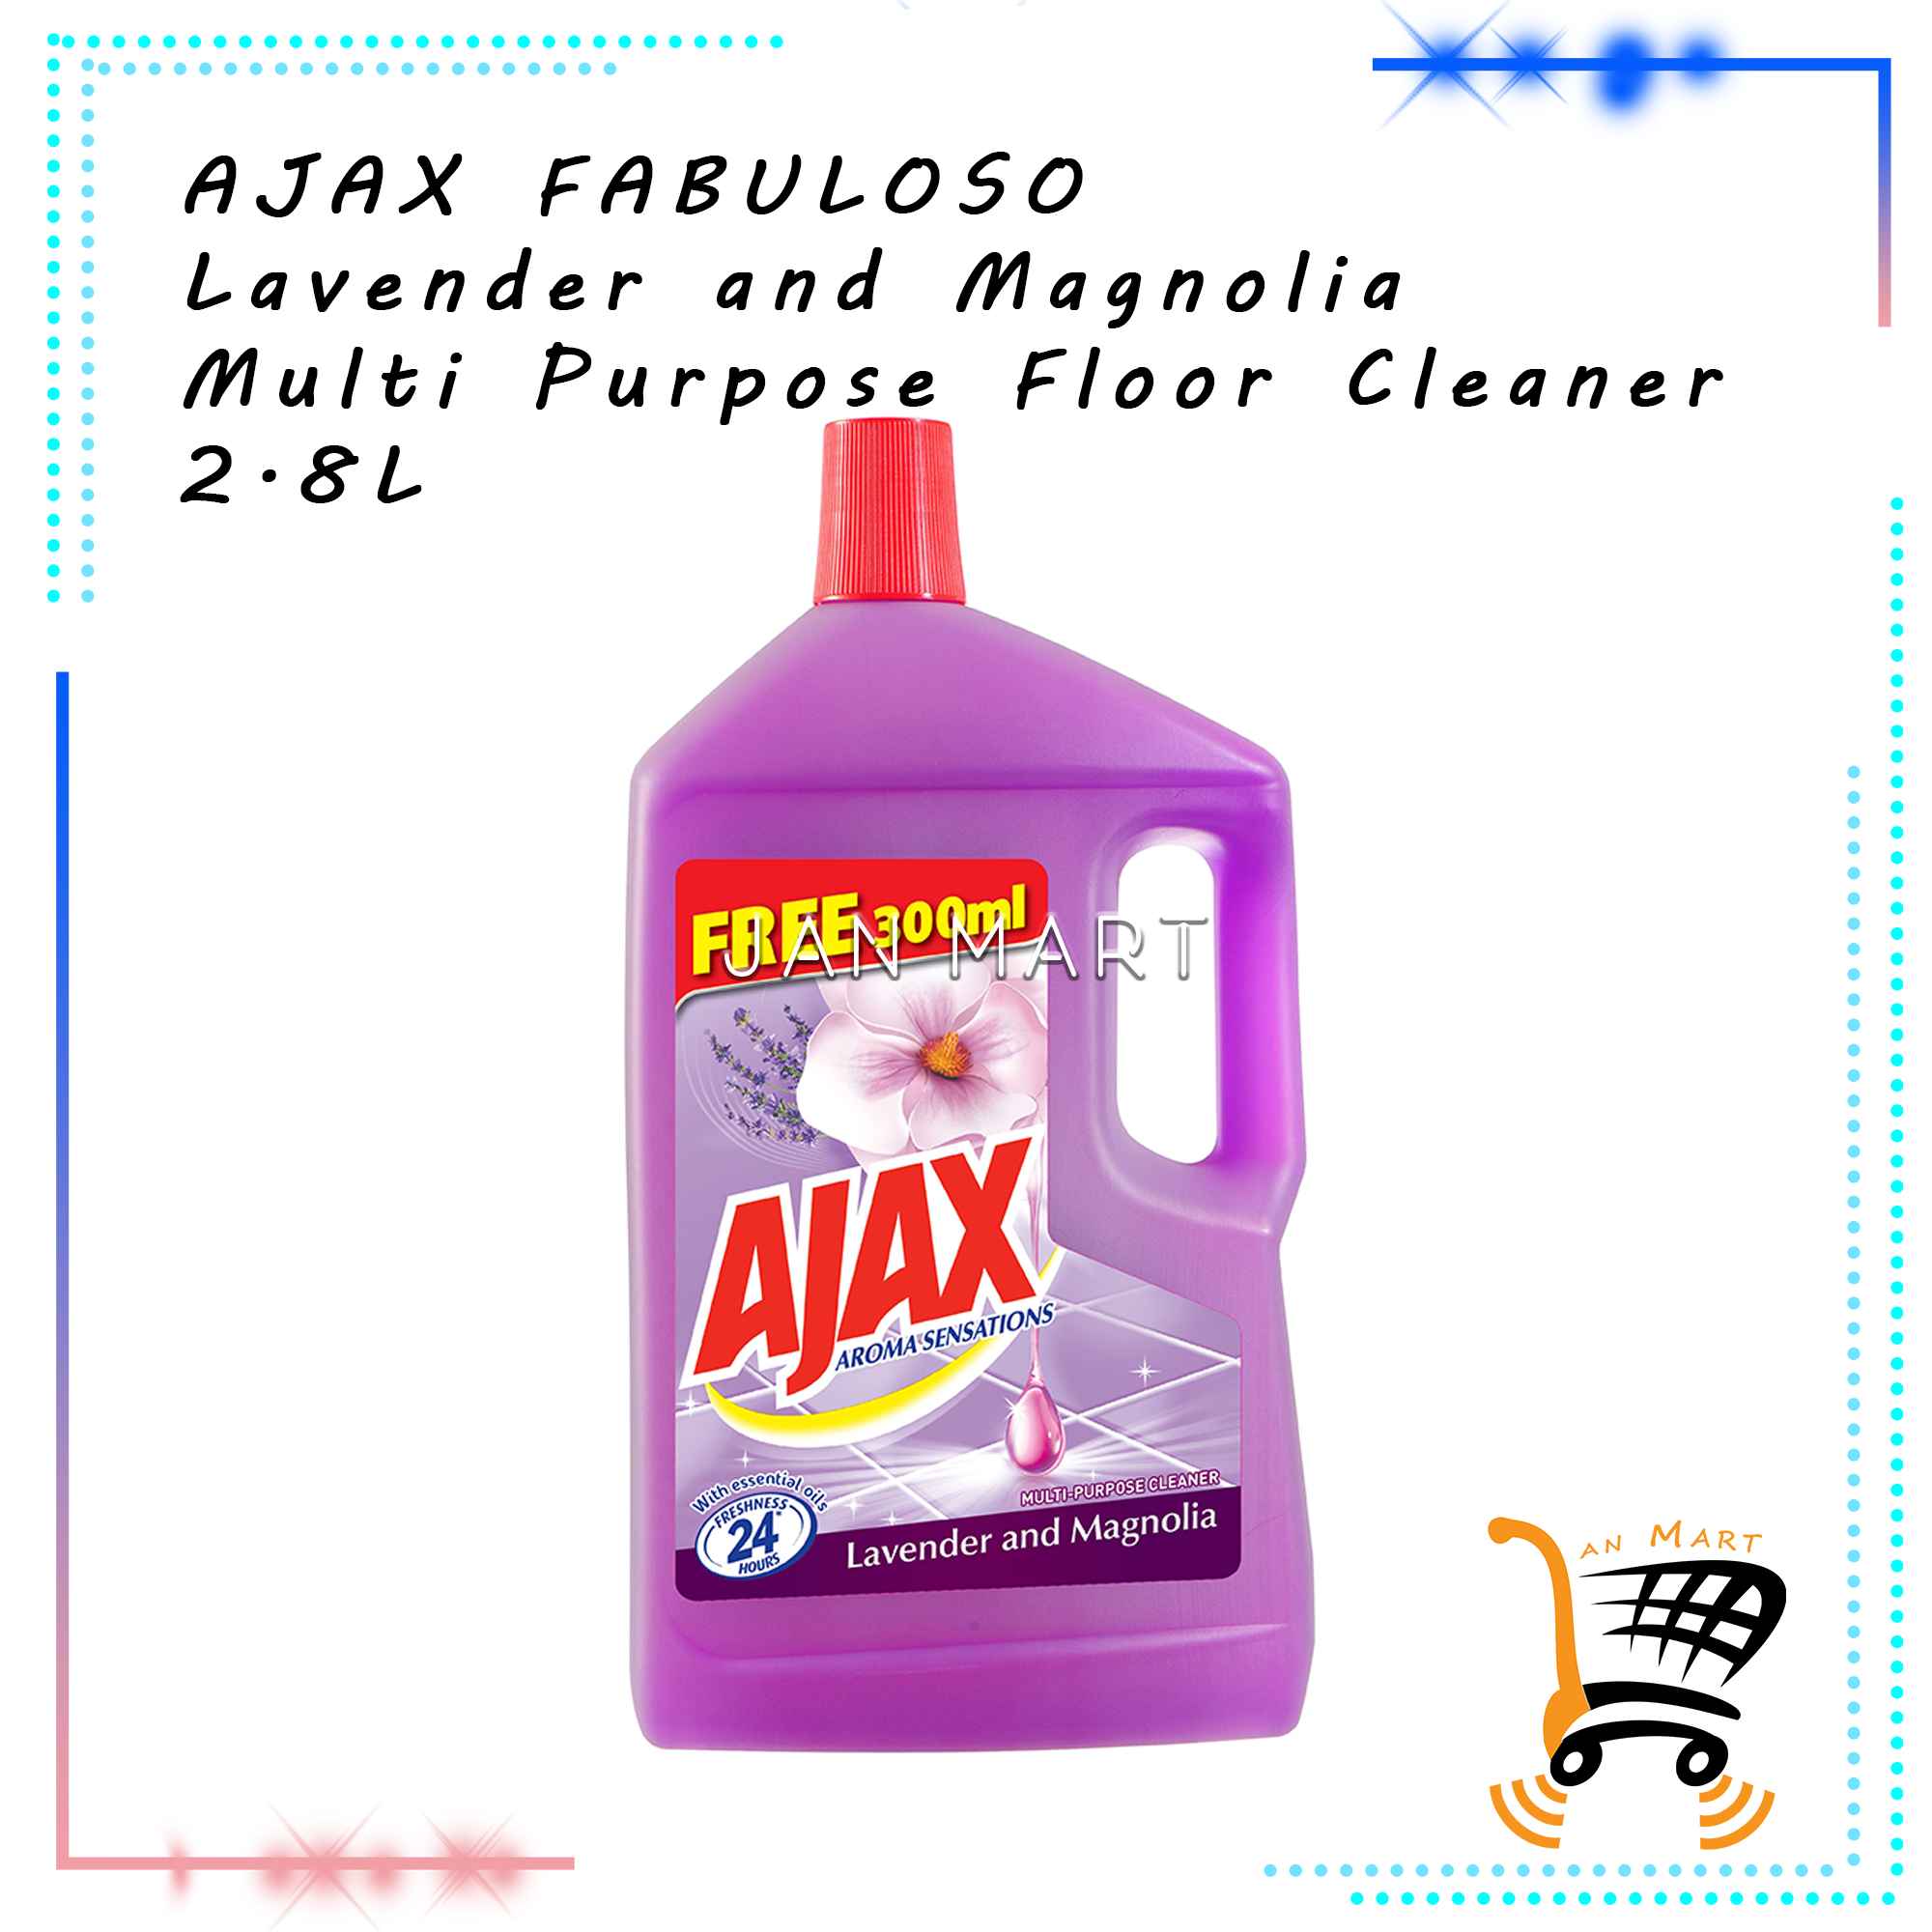 AJAX FABULOSO Lavender and Magnolia Multi Purpose Floor Cleaner 2.8L